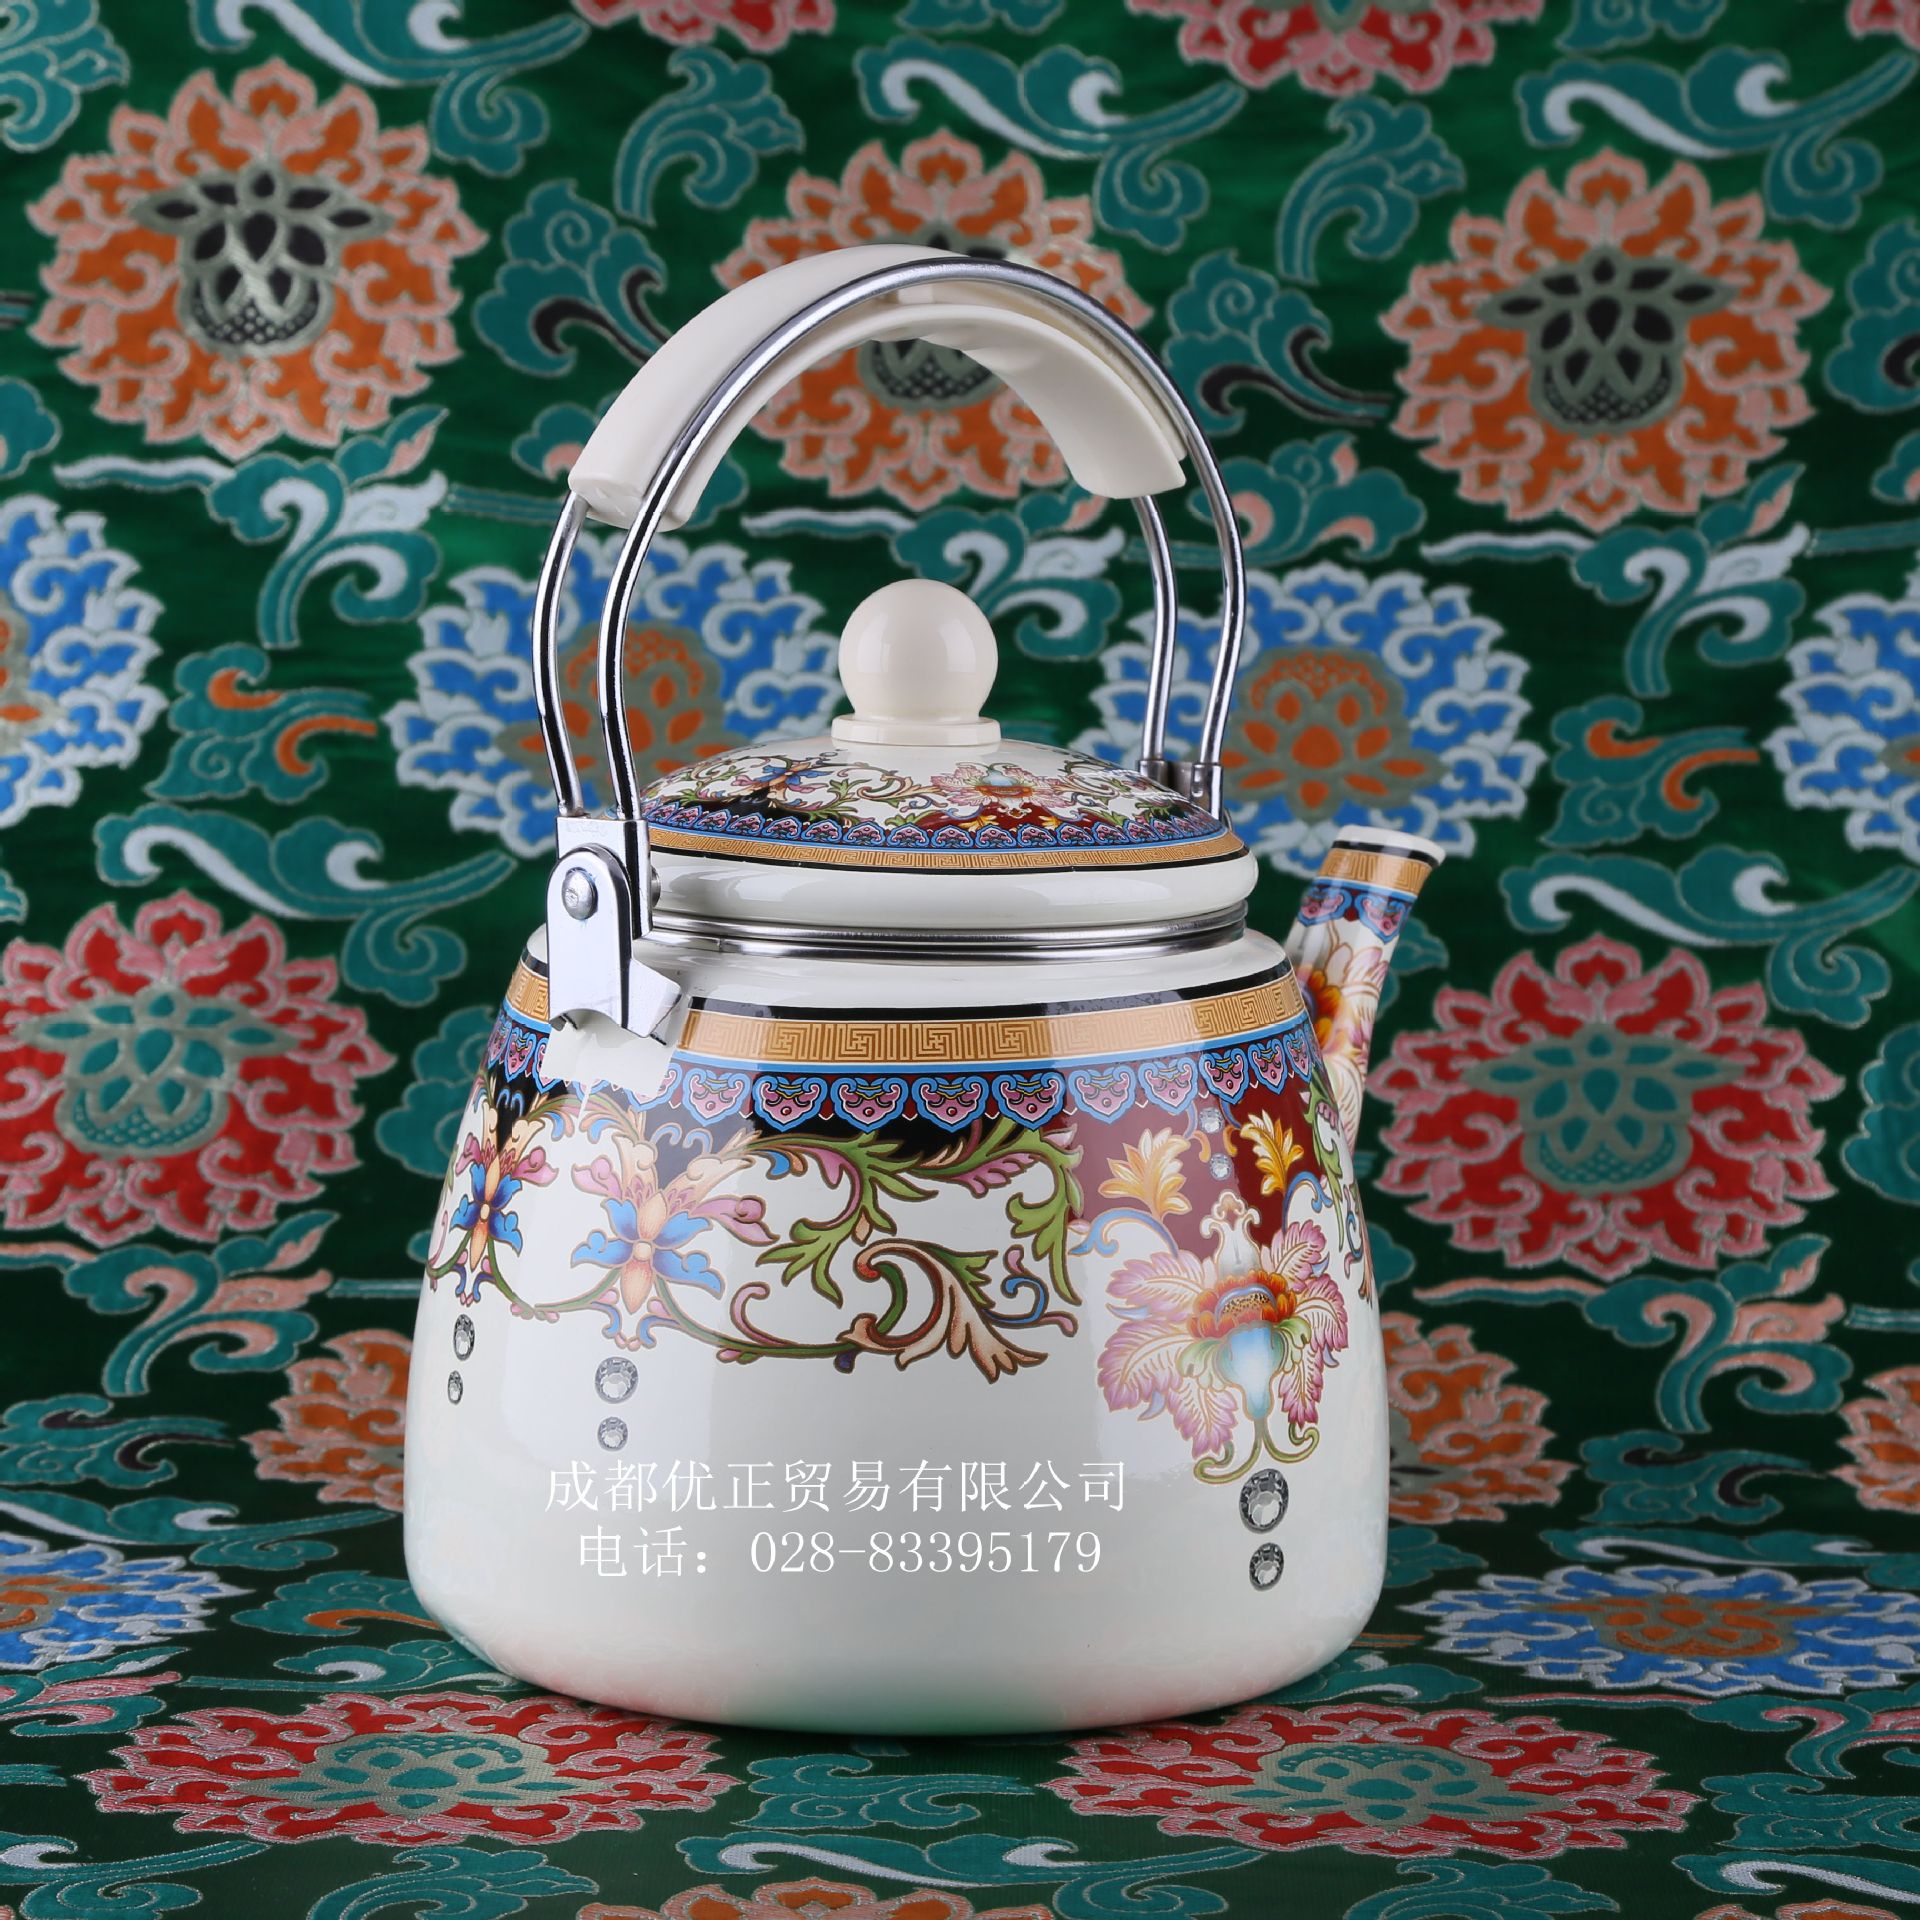 珐琅搪瓷水壶礼品壶 搪瓷材质通用奶茶壶 搪瓷茶具凉水烧水壶